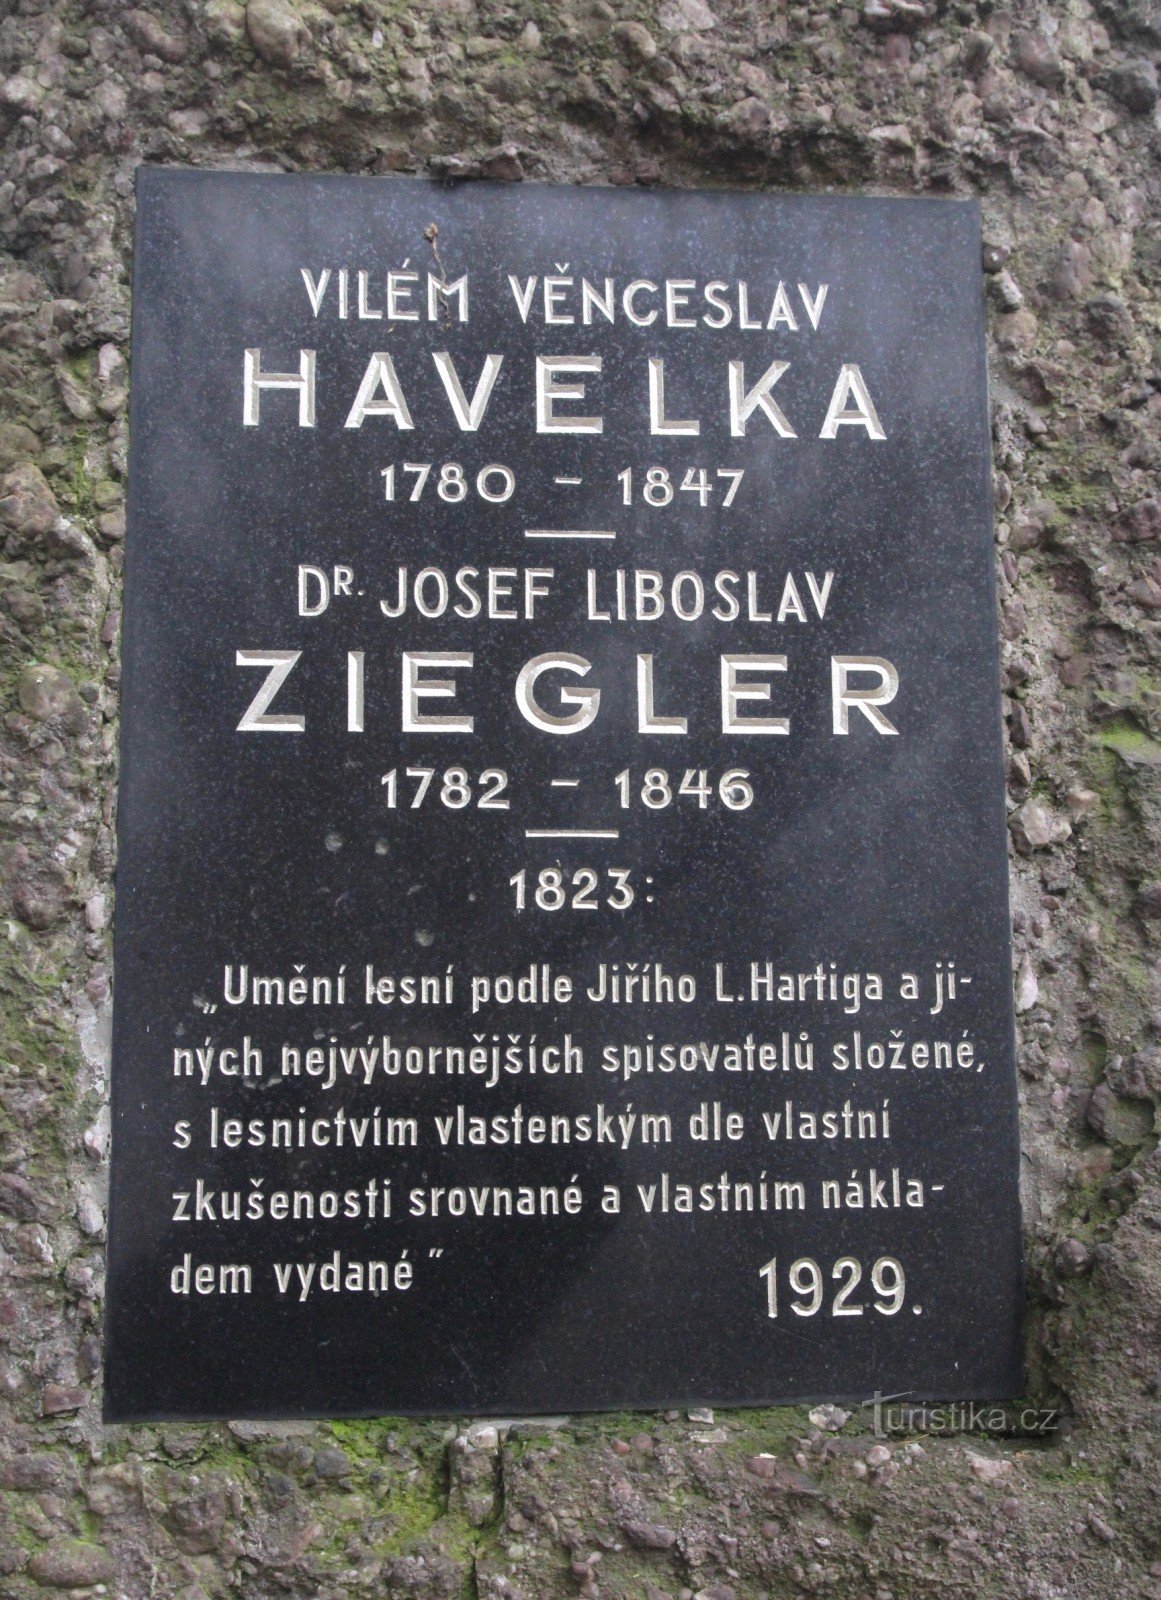 Μνημείο του VV Havelka και του JL Ziegler